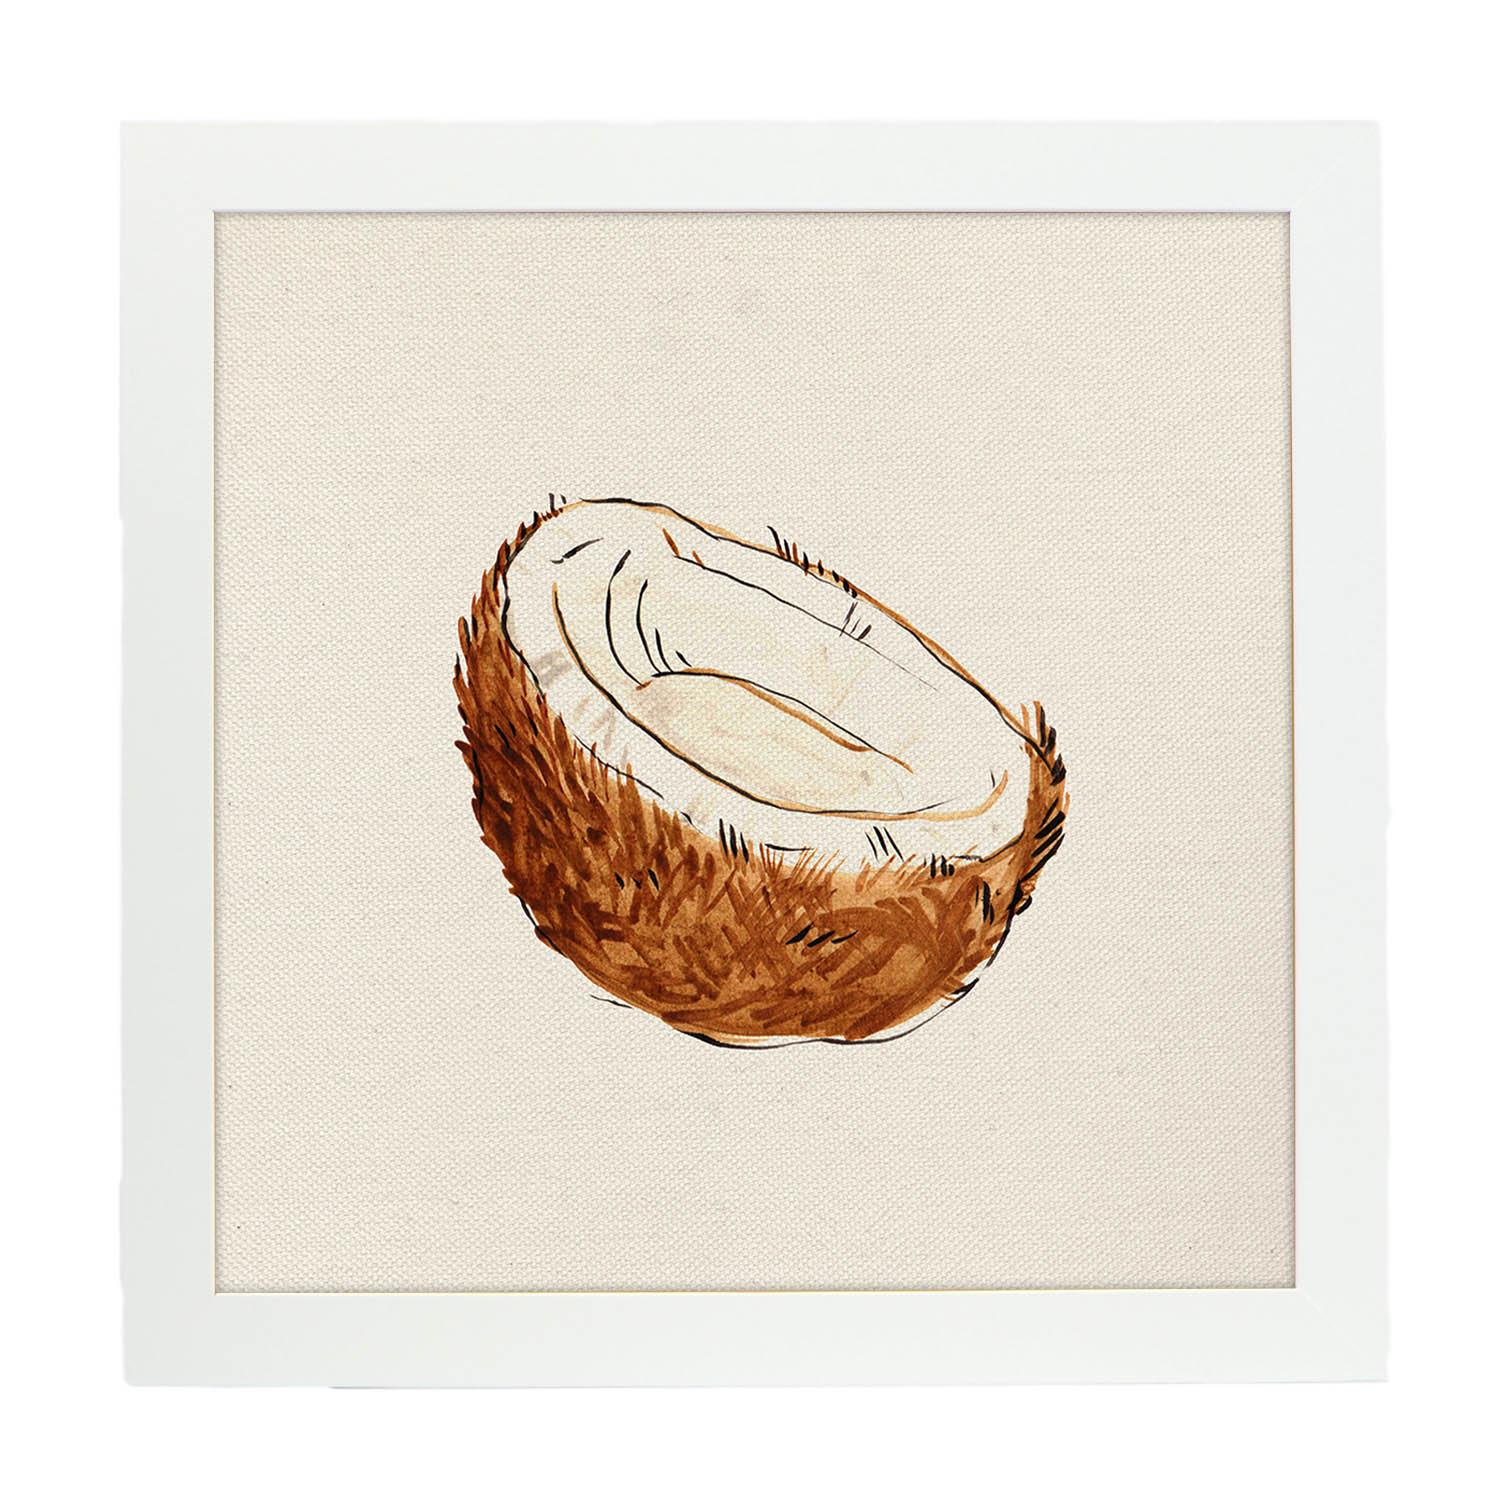 Poster cuadrado de Coconuts. Lámina de frutas y verduras de forma cuadrada, ilustrada con dibujos a color.-Artwork-Nacnic-20x20 cm-Marco Blanco-Nacnic Estudio SL